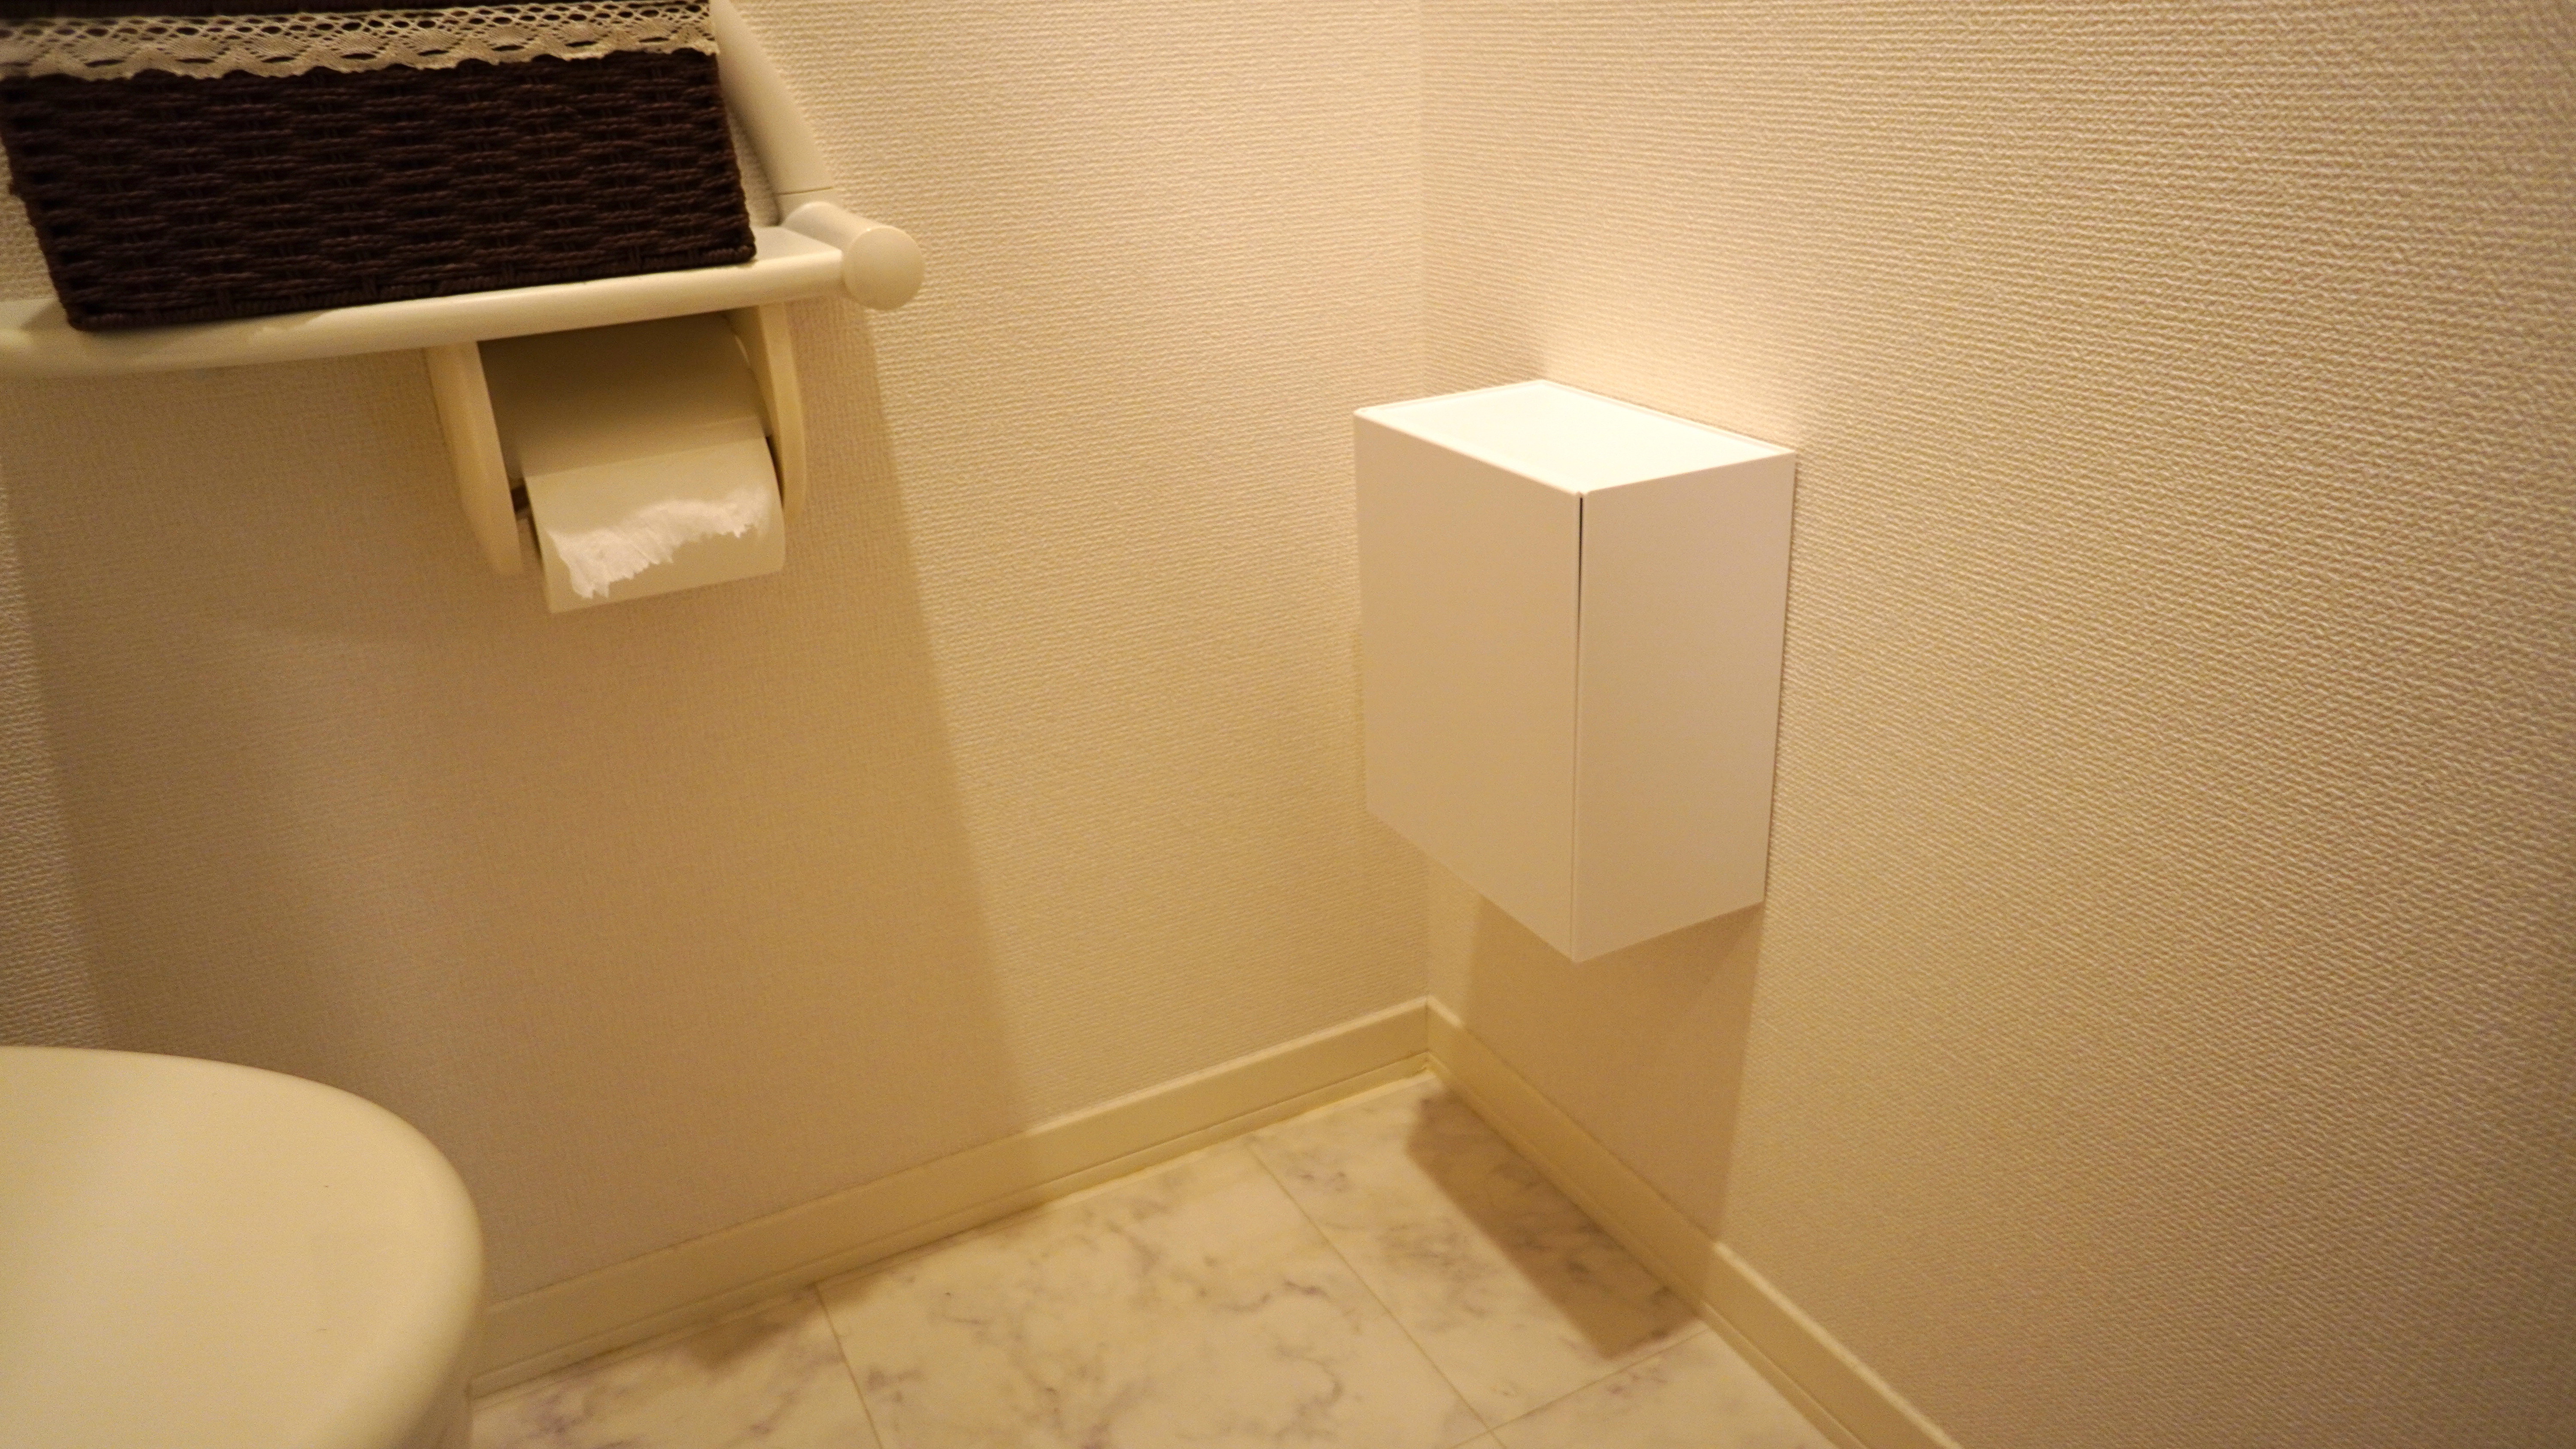 山崎実業の新アイテムで、トイレの「浮かせる収納」が叶う